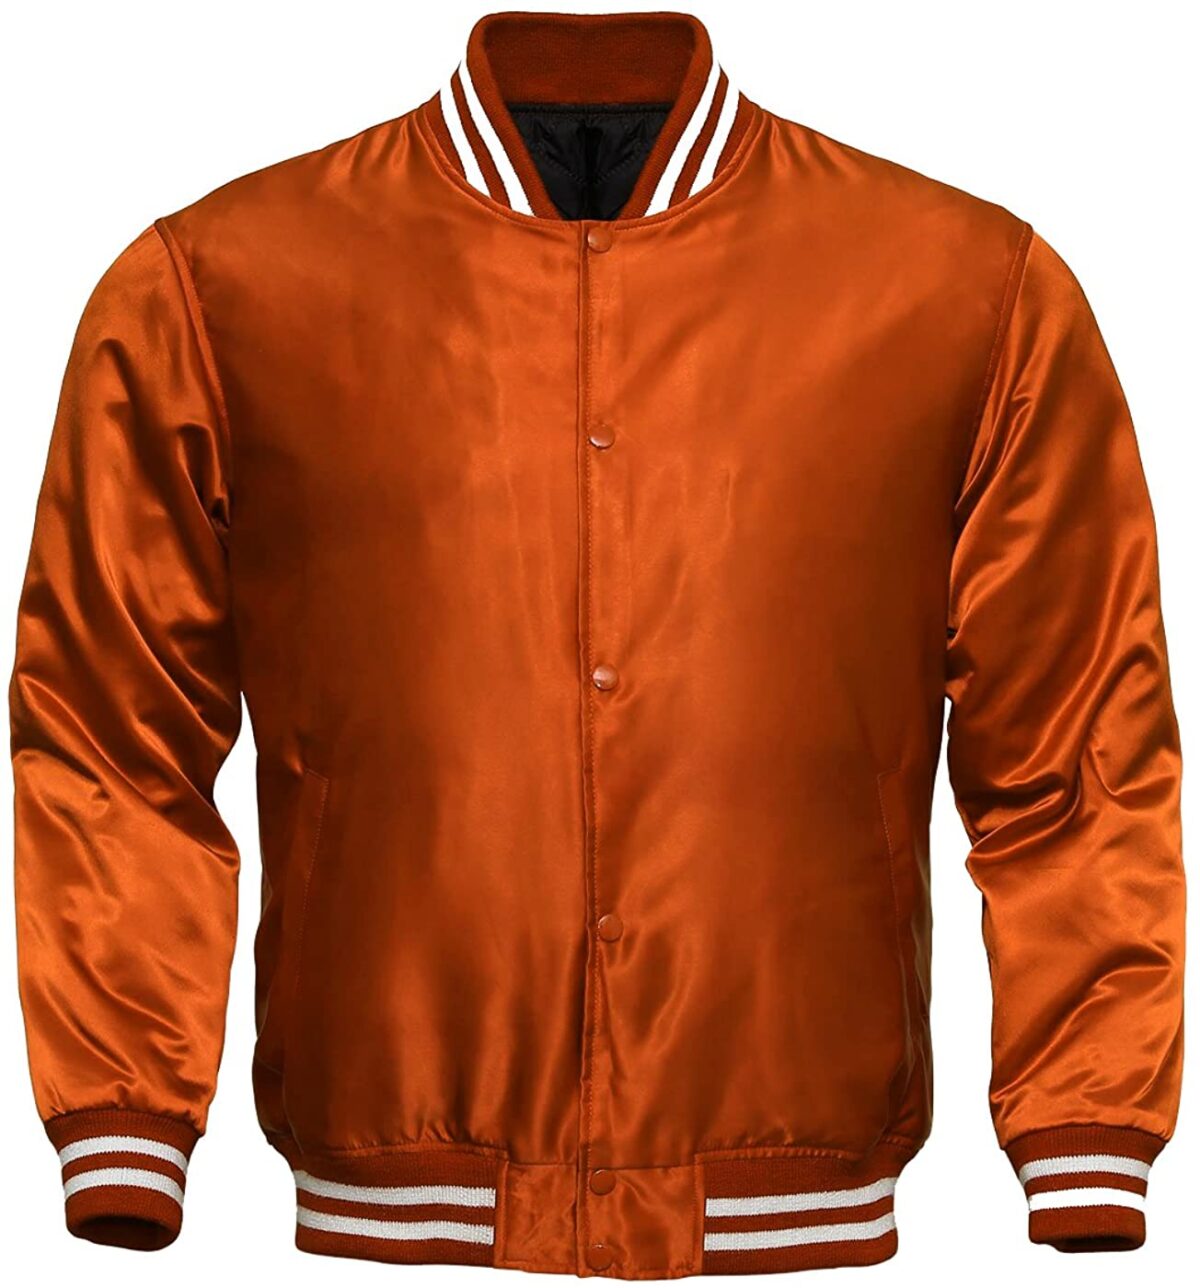 Custom Varsity Satin Orange Jackets | Wholesale tryout Jackets